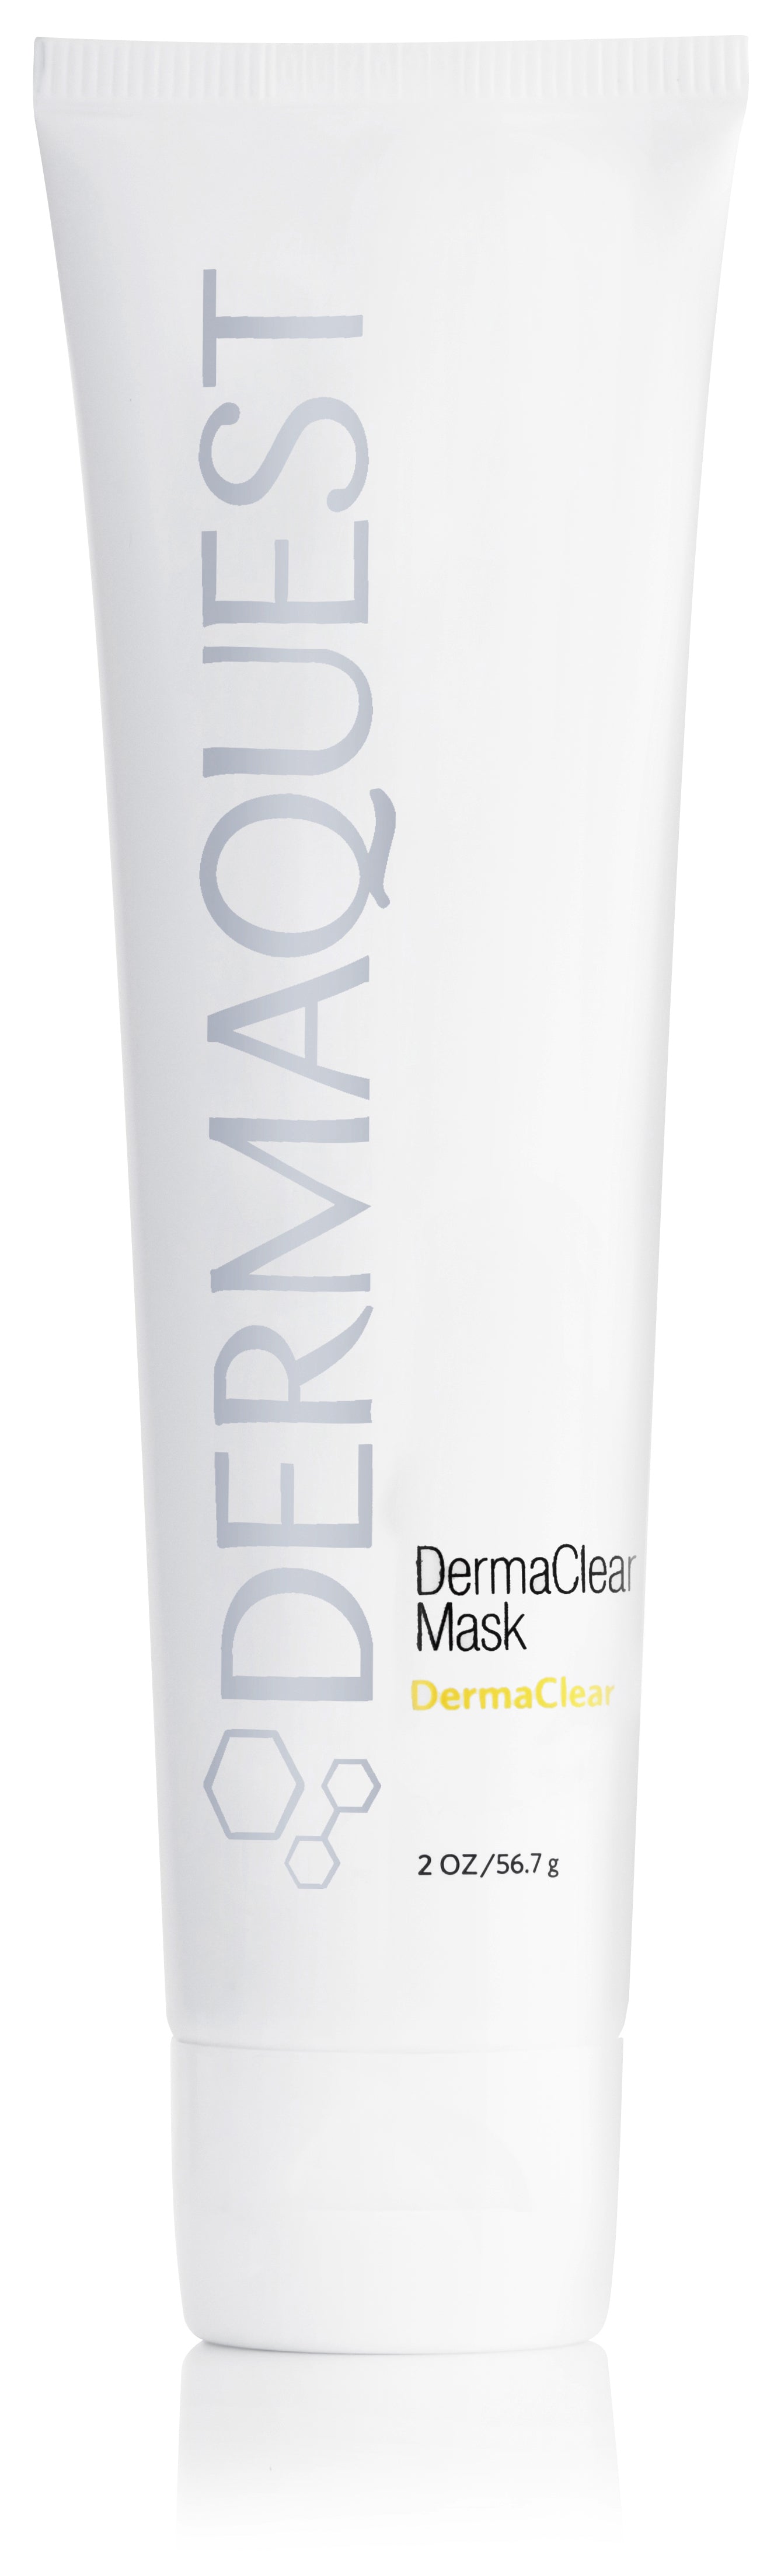 DERMAQUEST DermaClear暗瘡淨肌面膜 (DermaClear Mask) - Zkin Shop